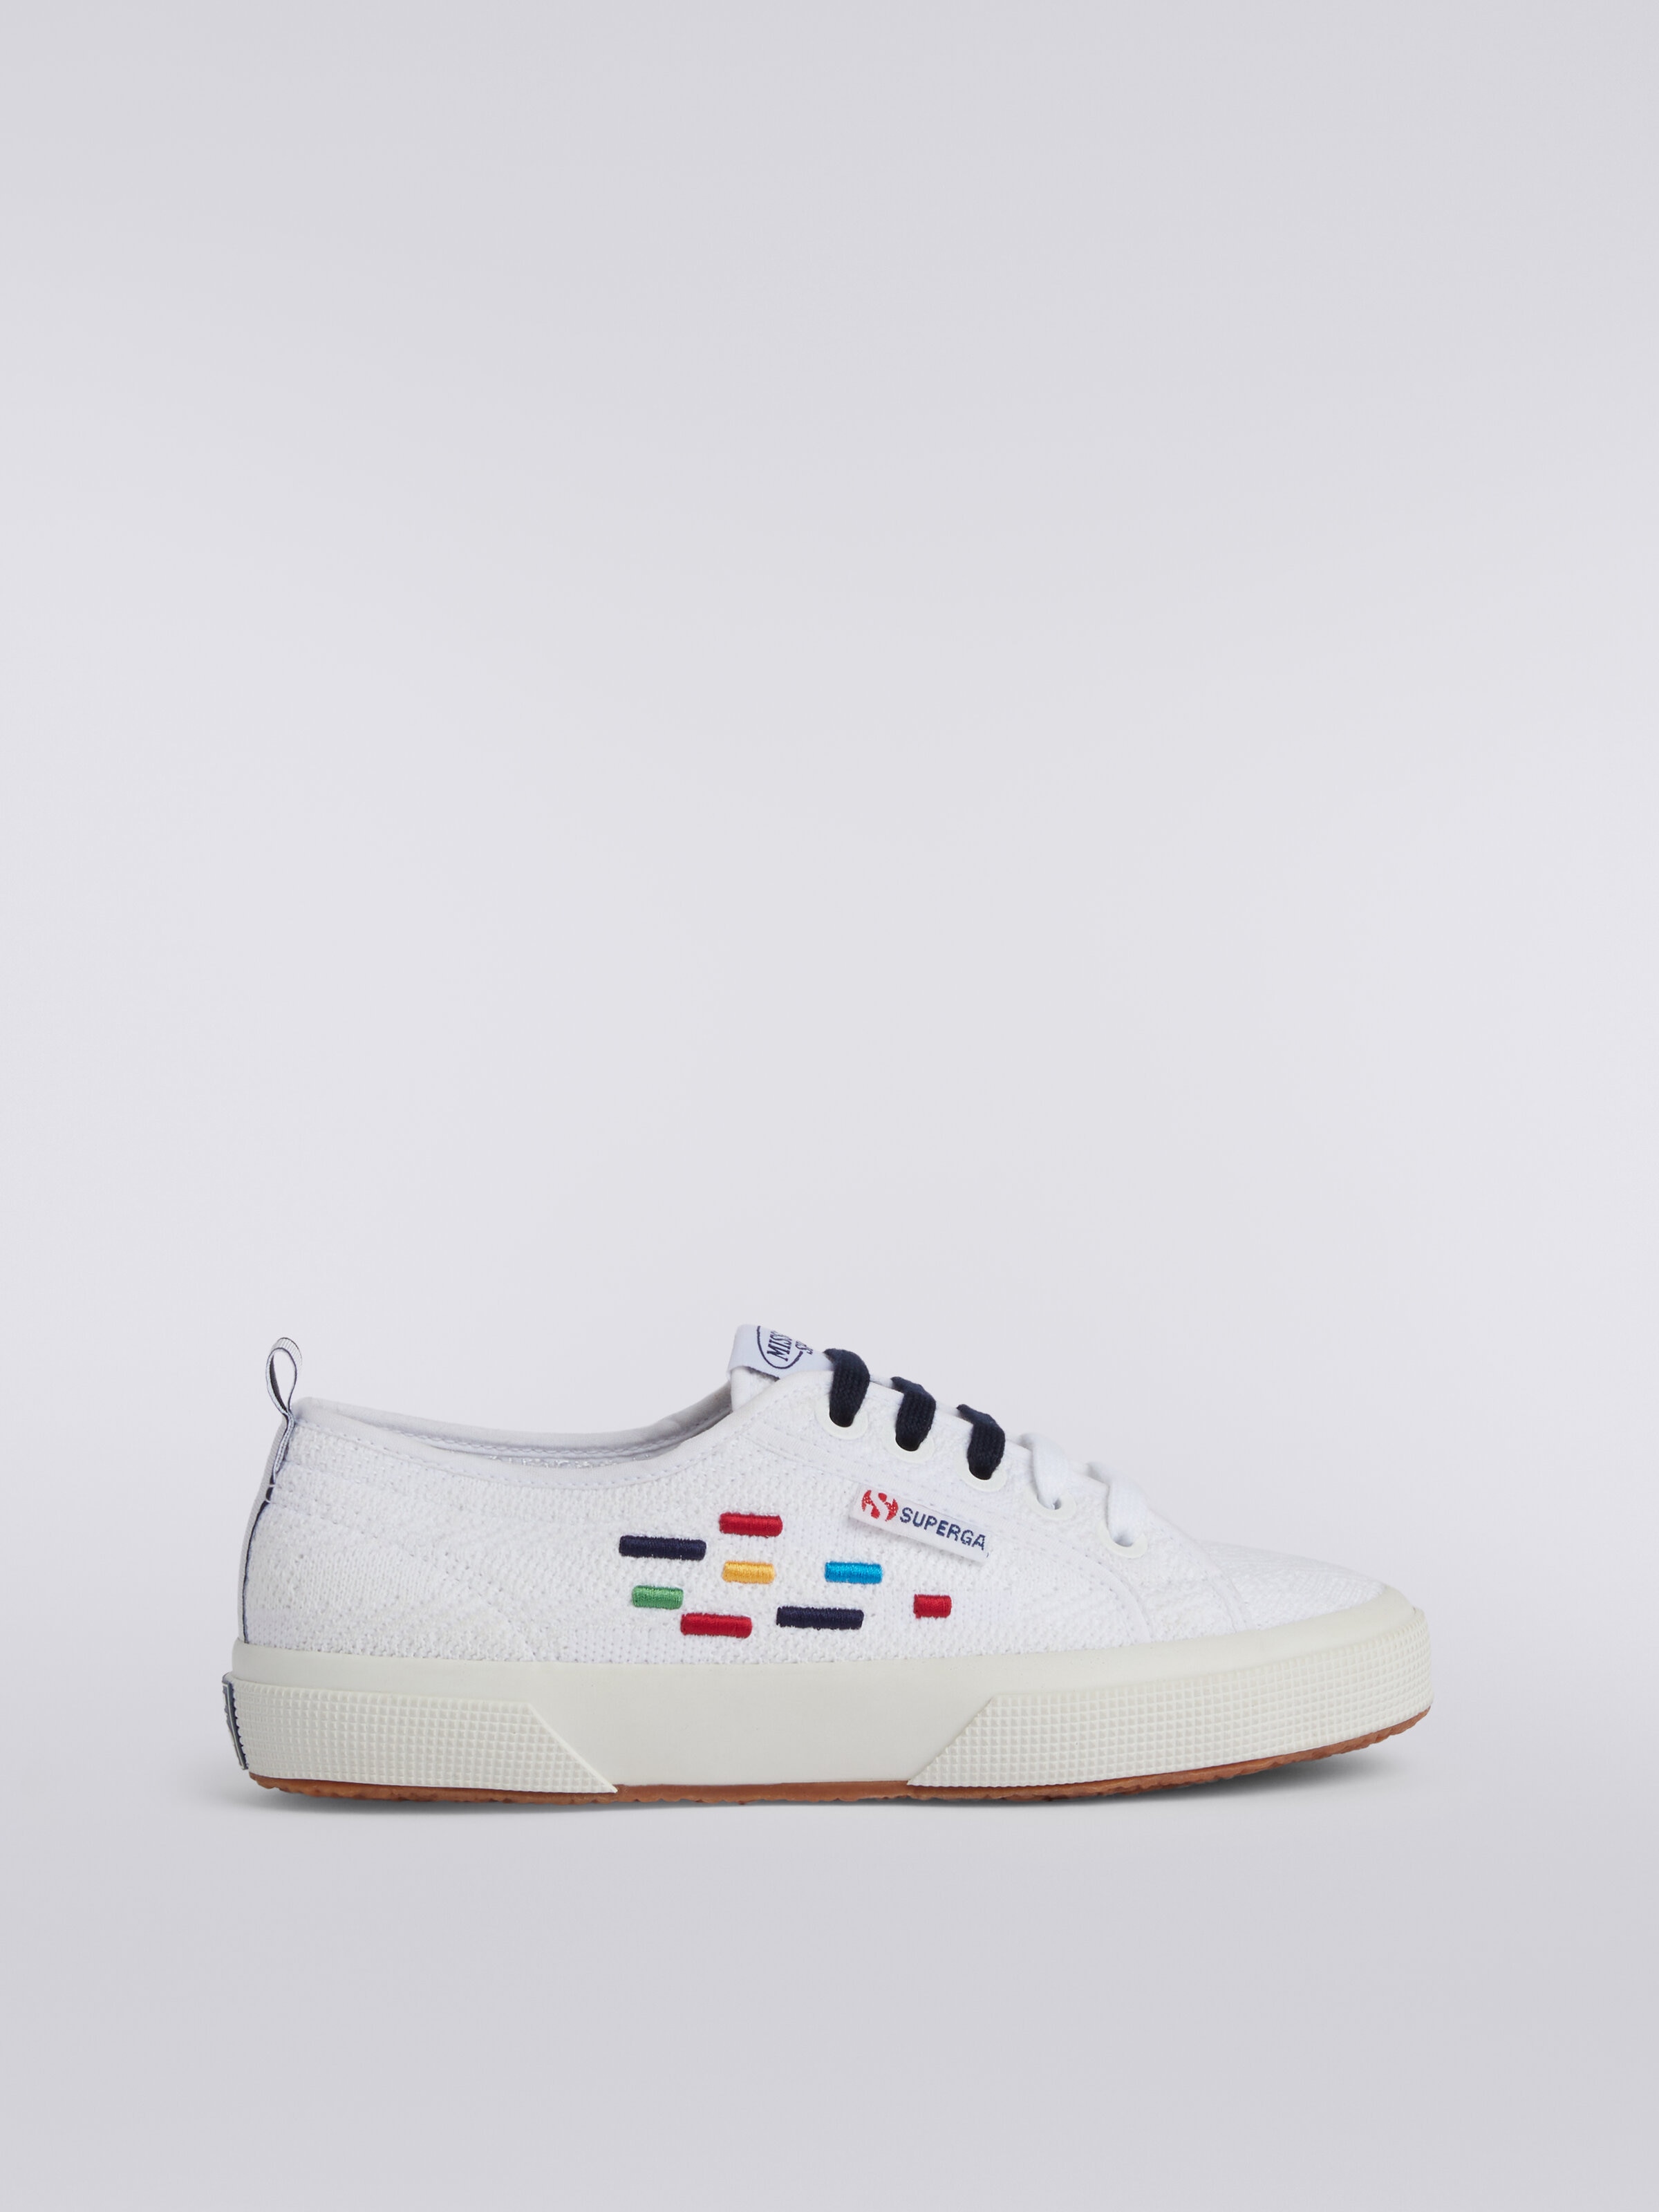 Superga X Missoni Sneaker in cotone , Multicolore  - 0